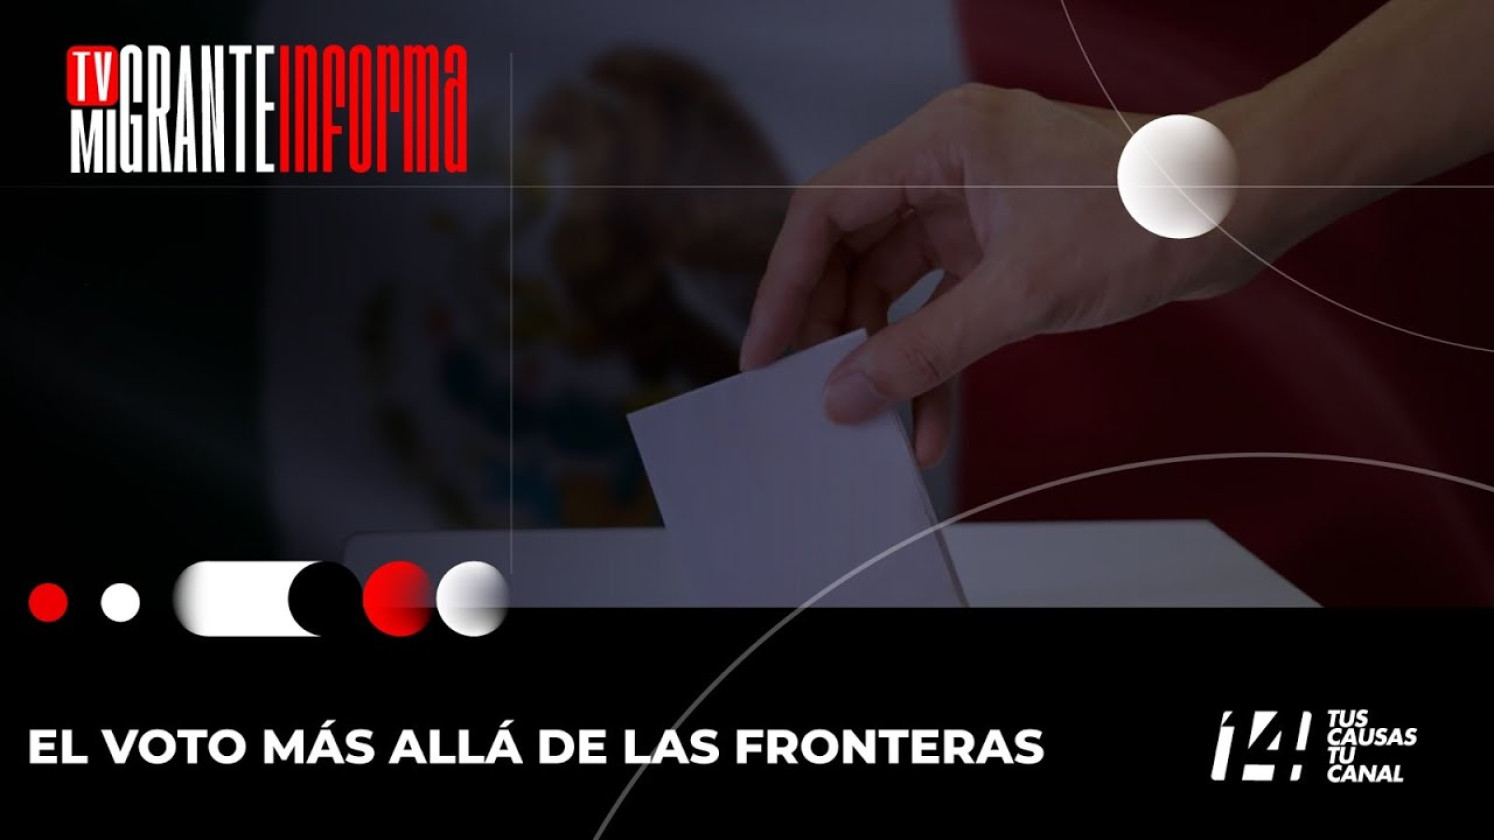 TVMigrante Informa: El voto más allá de las fronteras